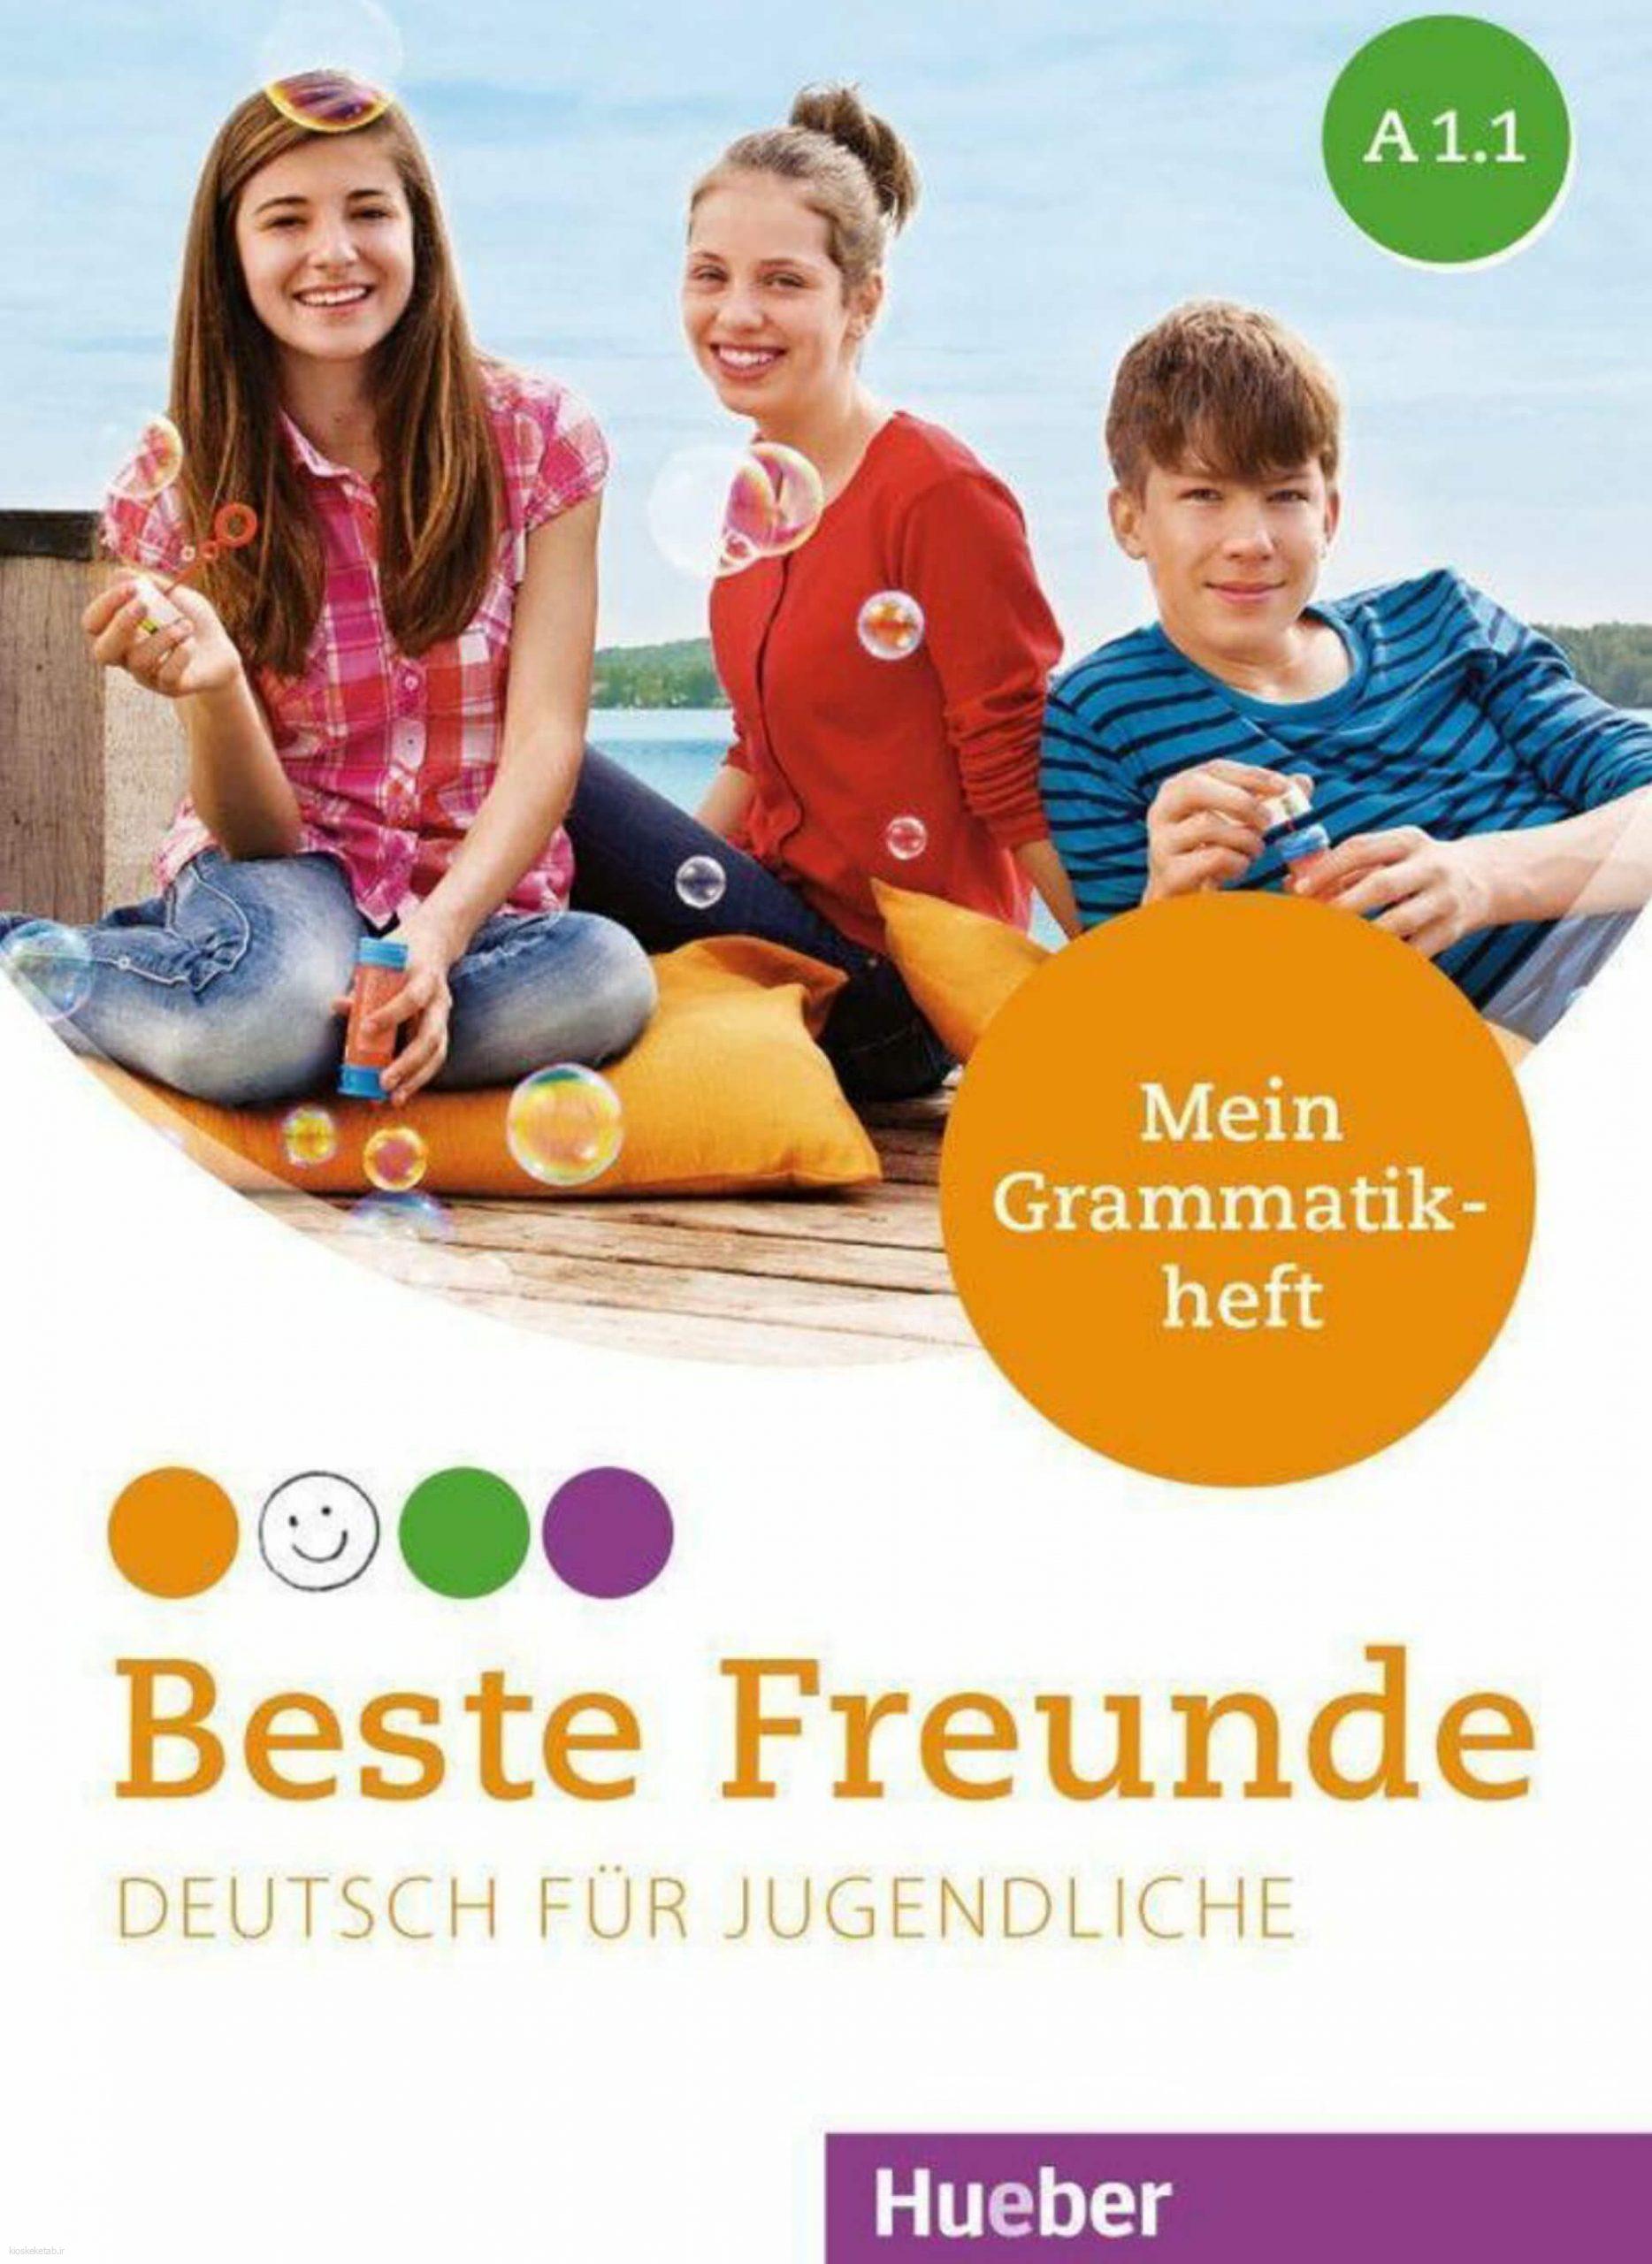 دانلود کتاب آلمانیBeste Freunde Grammatikheft A1.1